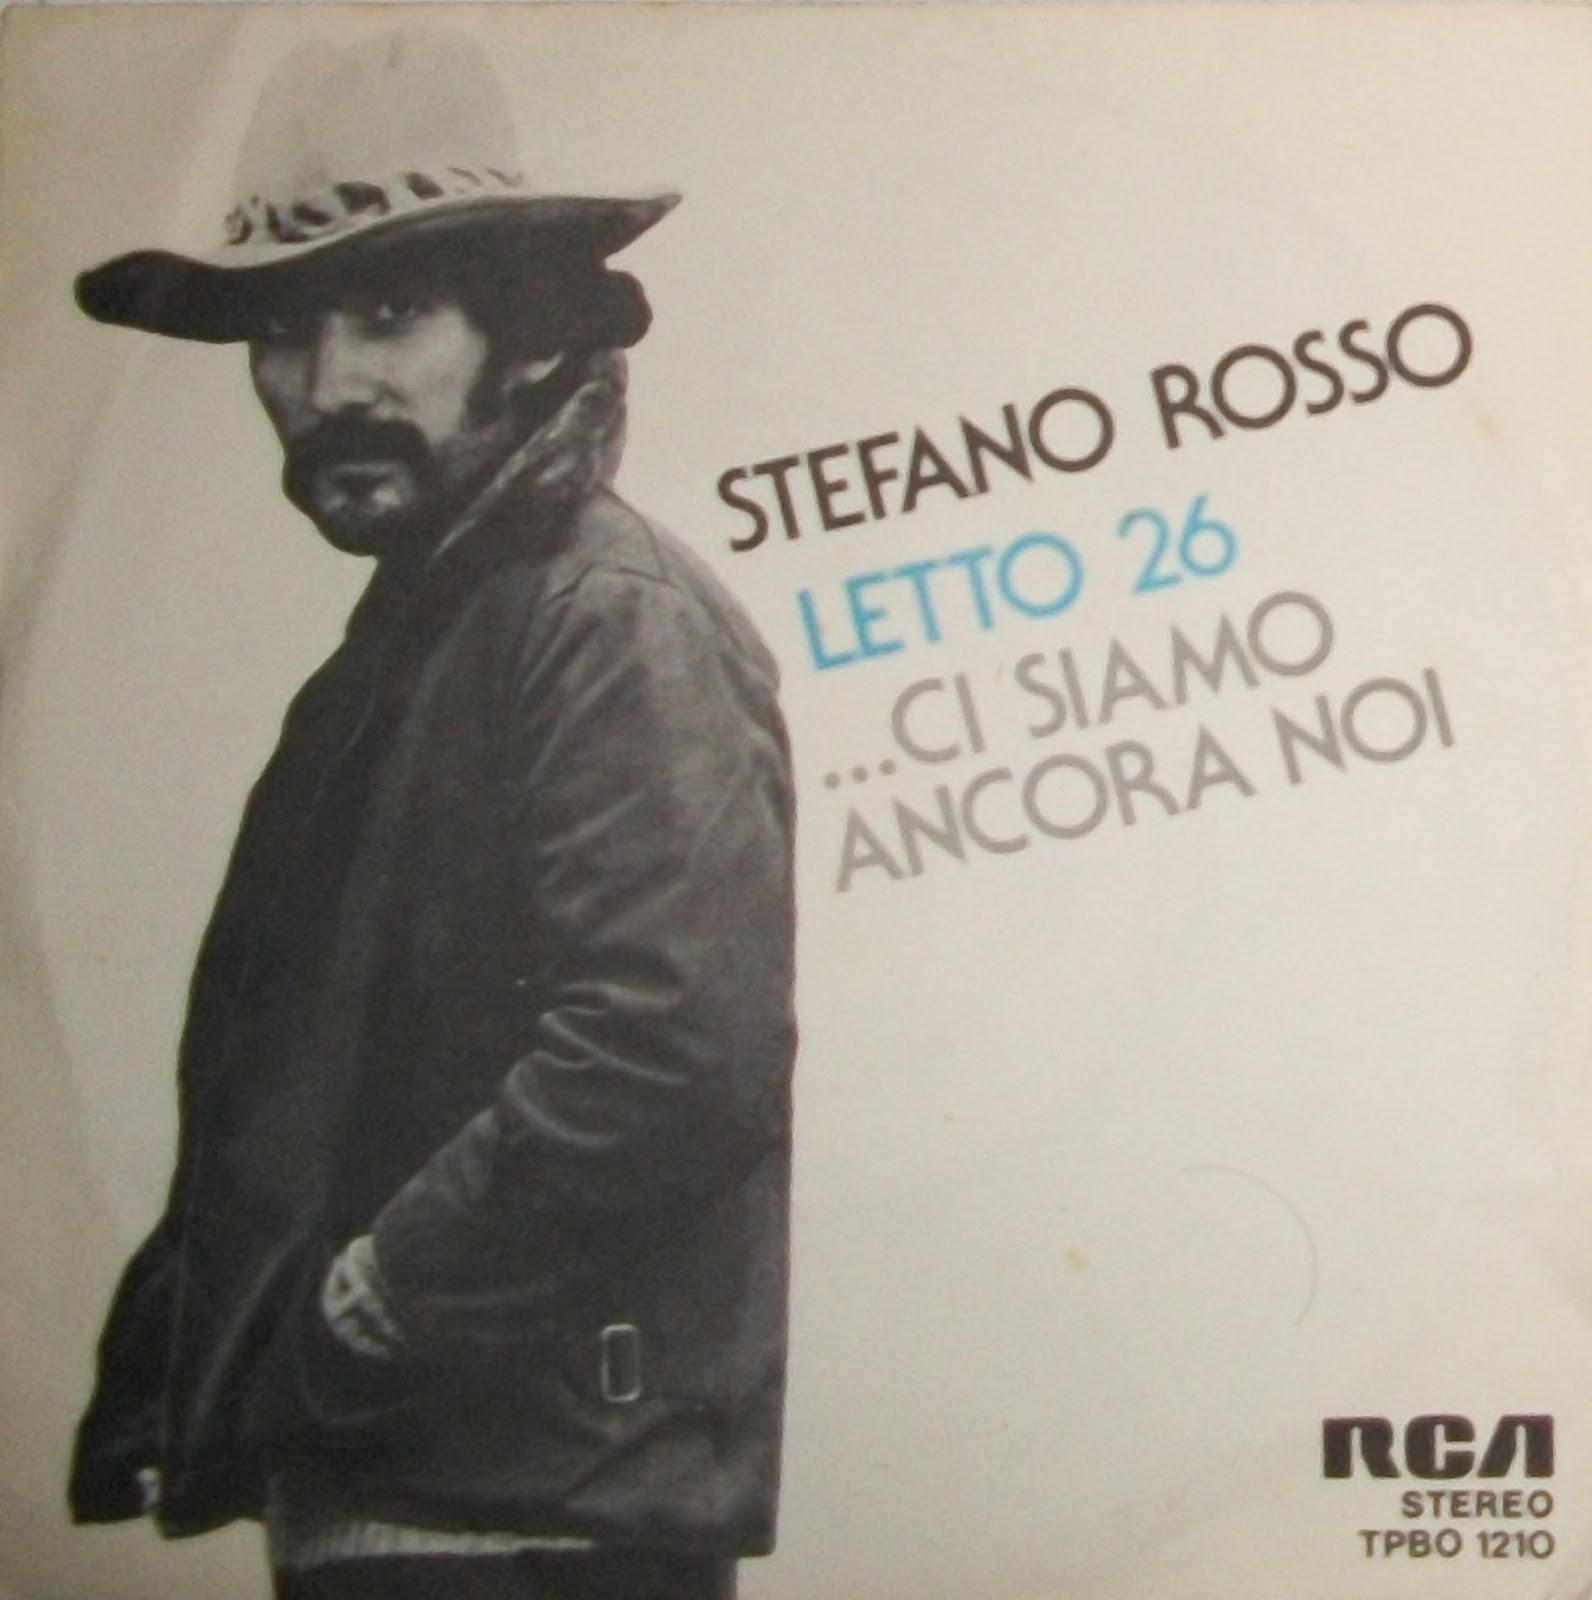 Le note di Euterpe: Stefano Rosso - Letto 26/ci siamo ancora noi (1976)